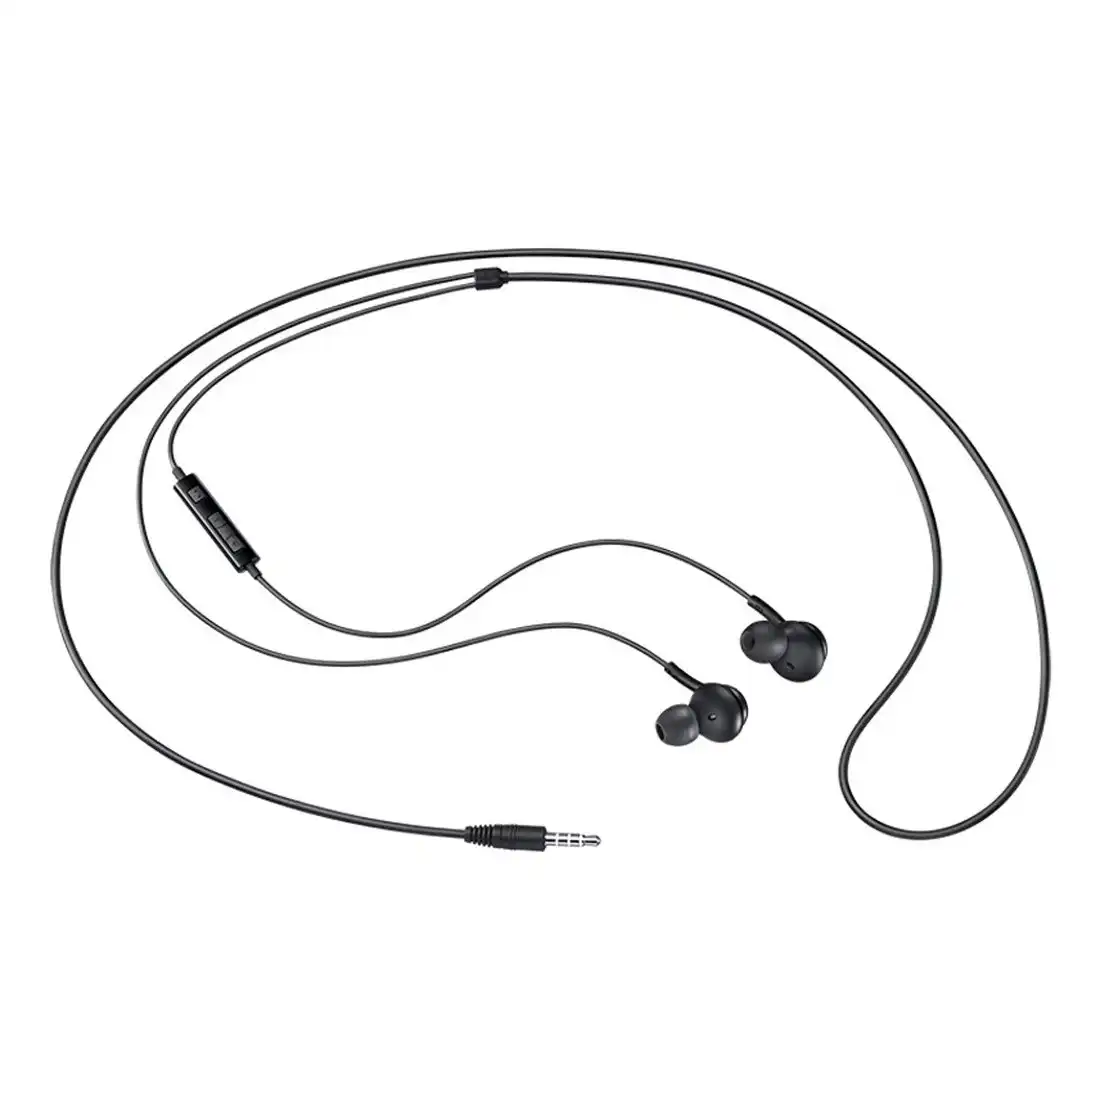 Samsung In-Ear Wired Earphones 3.5mm EO-IA500BBEGWW - Black